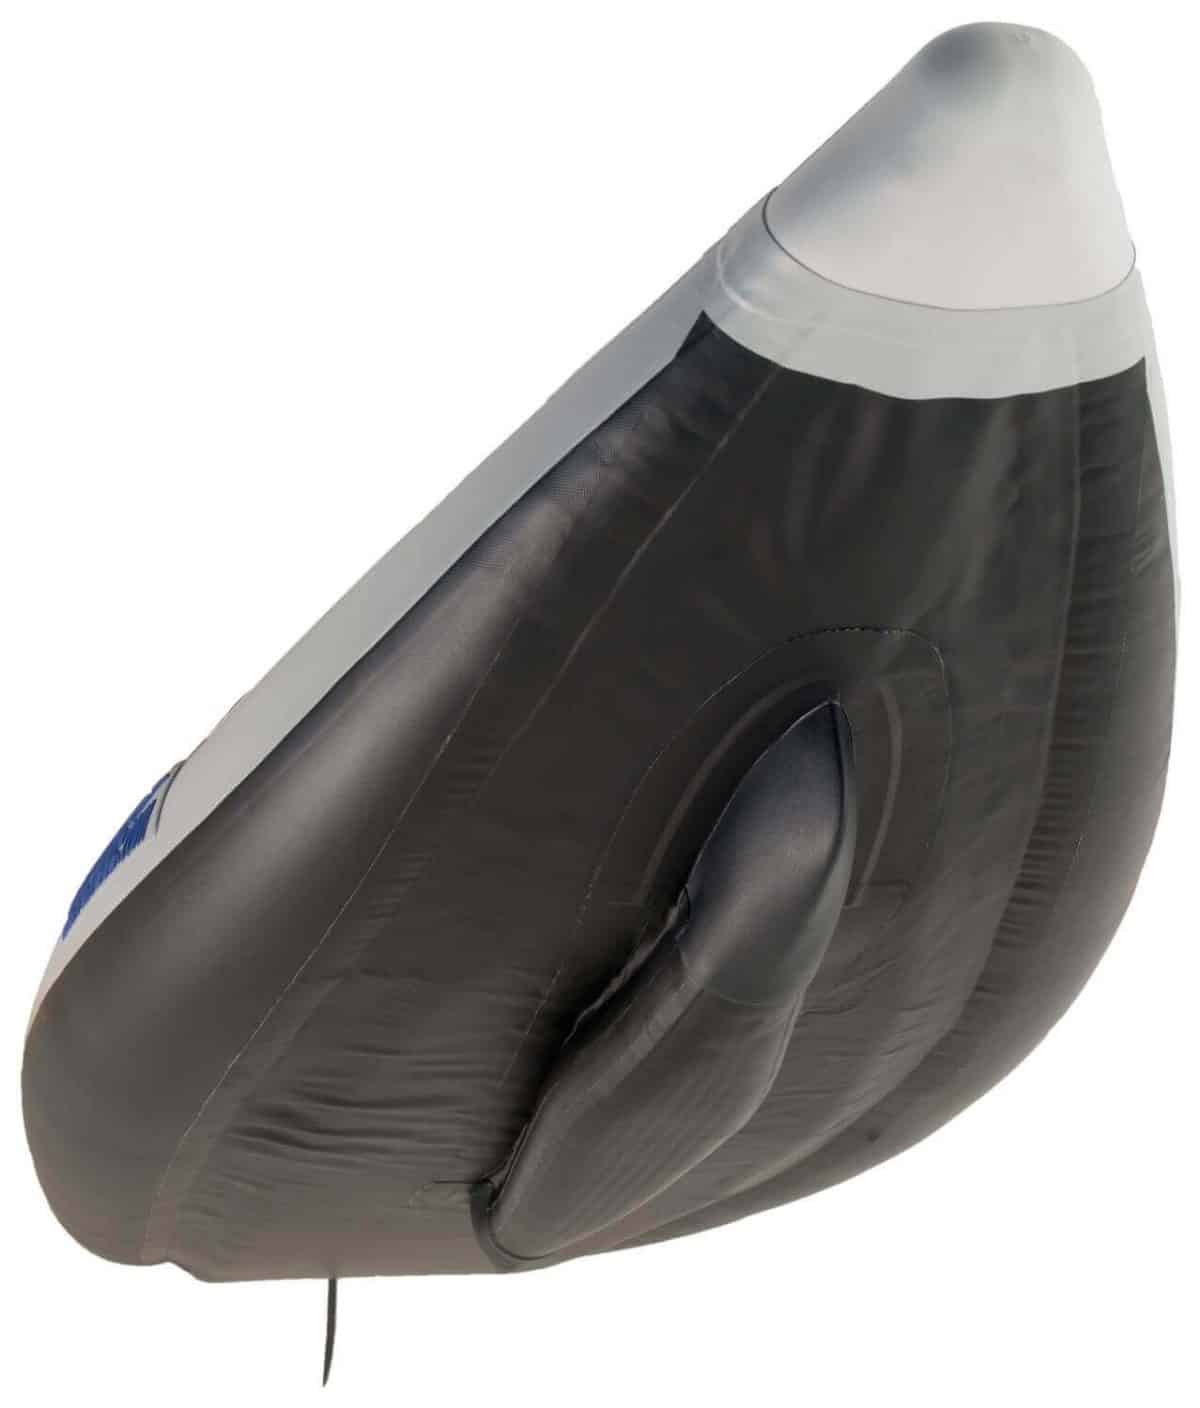 Patented NeedleKnife rigid inflatable keel on the Sea Eagle FastTrack inflatable kayak.